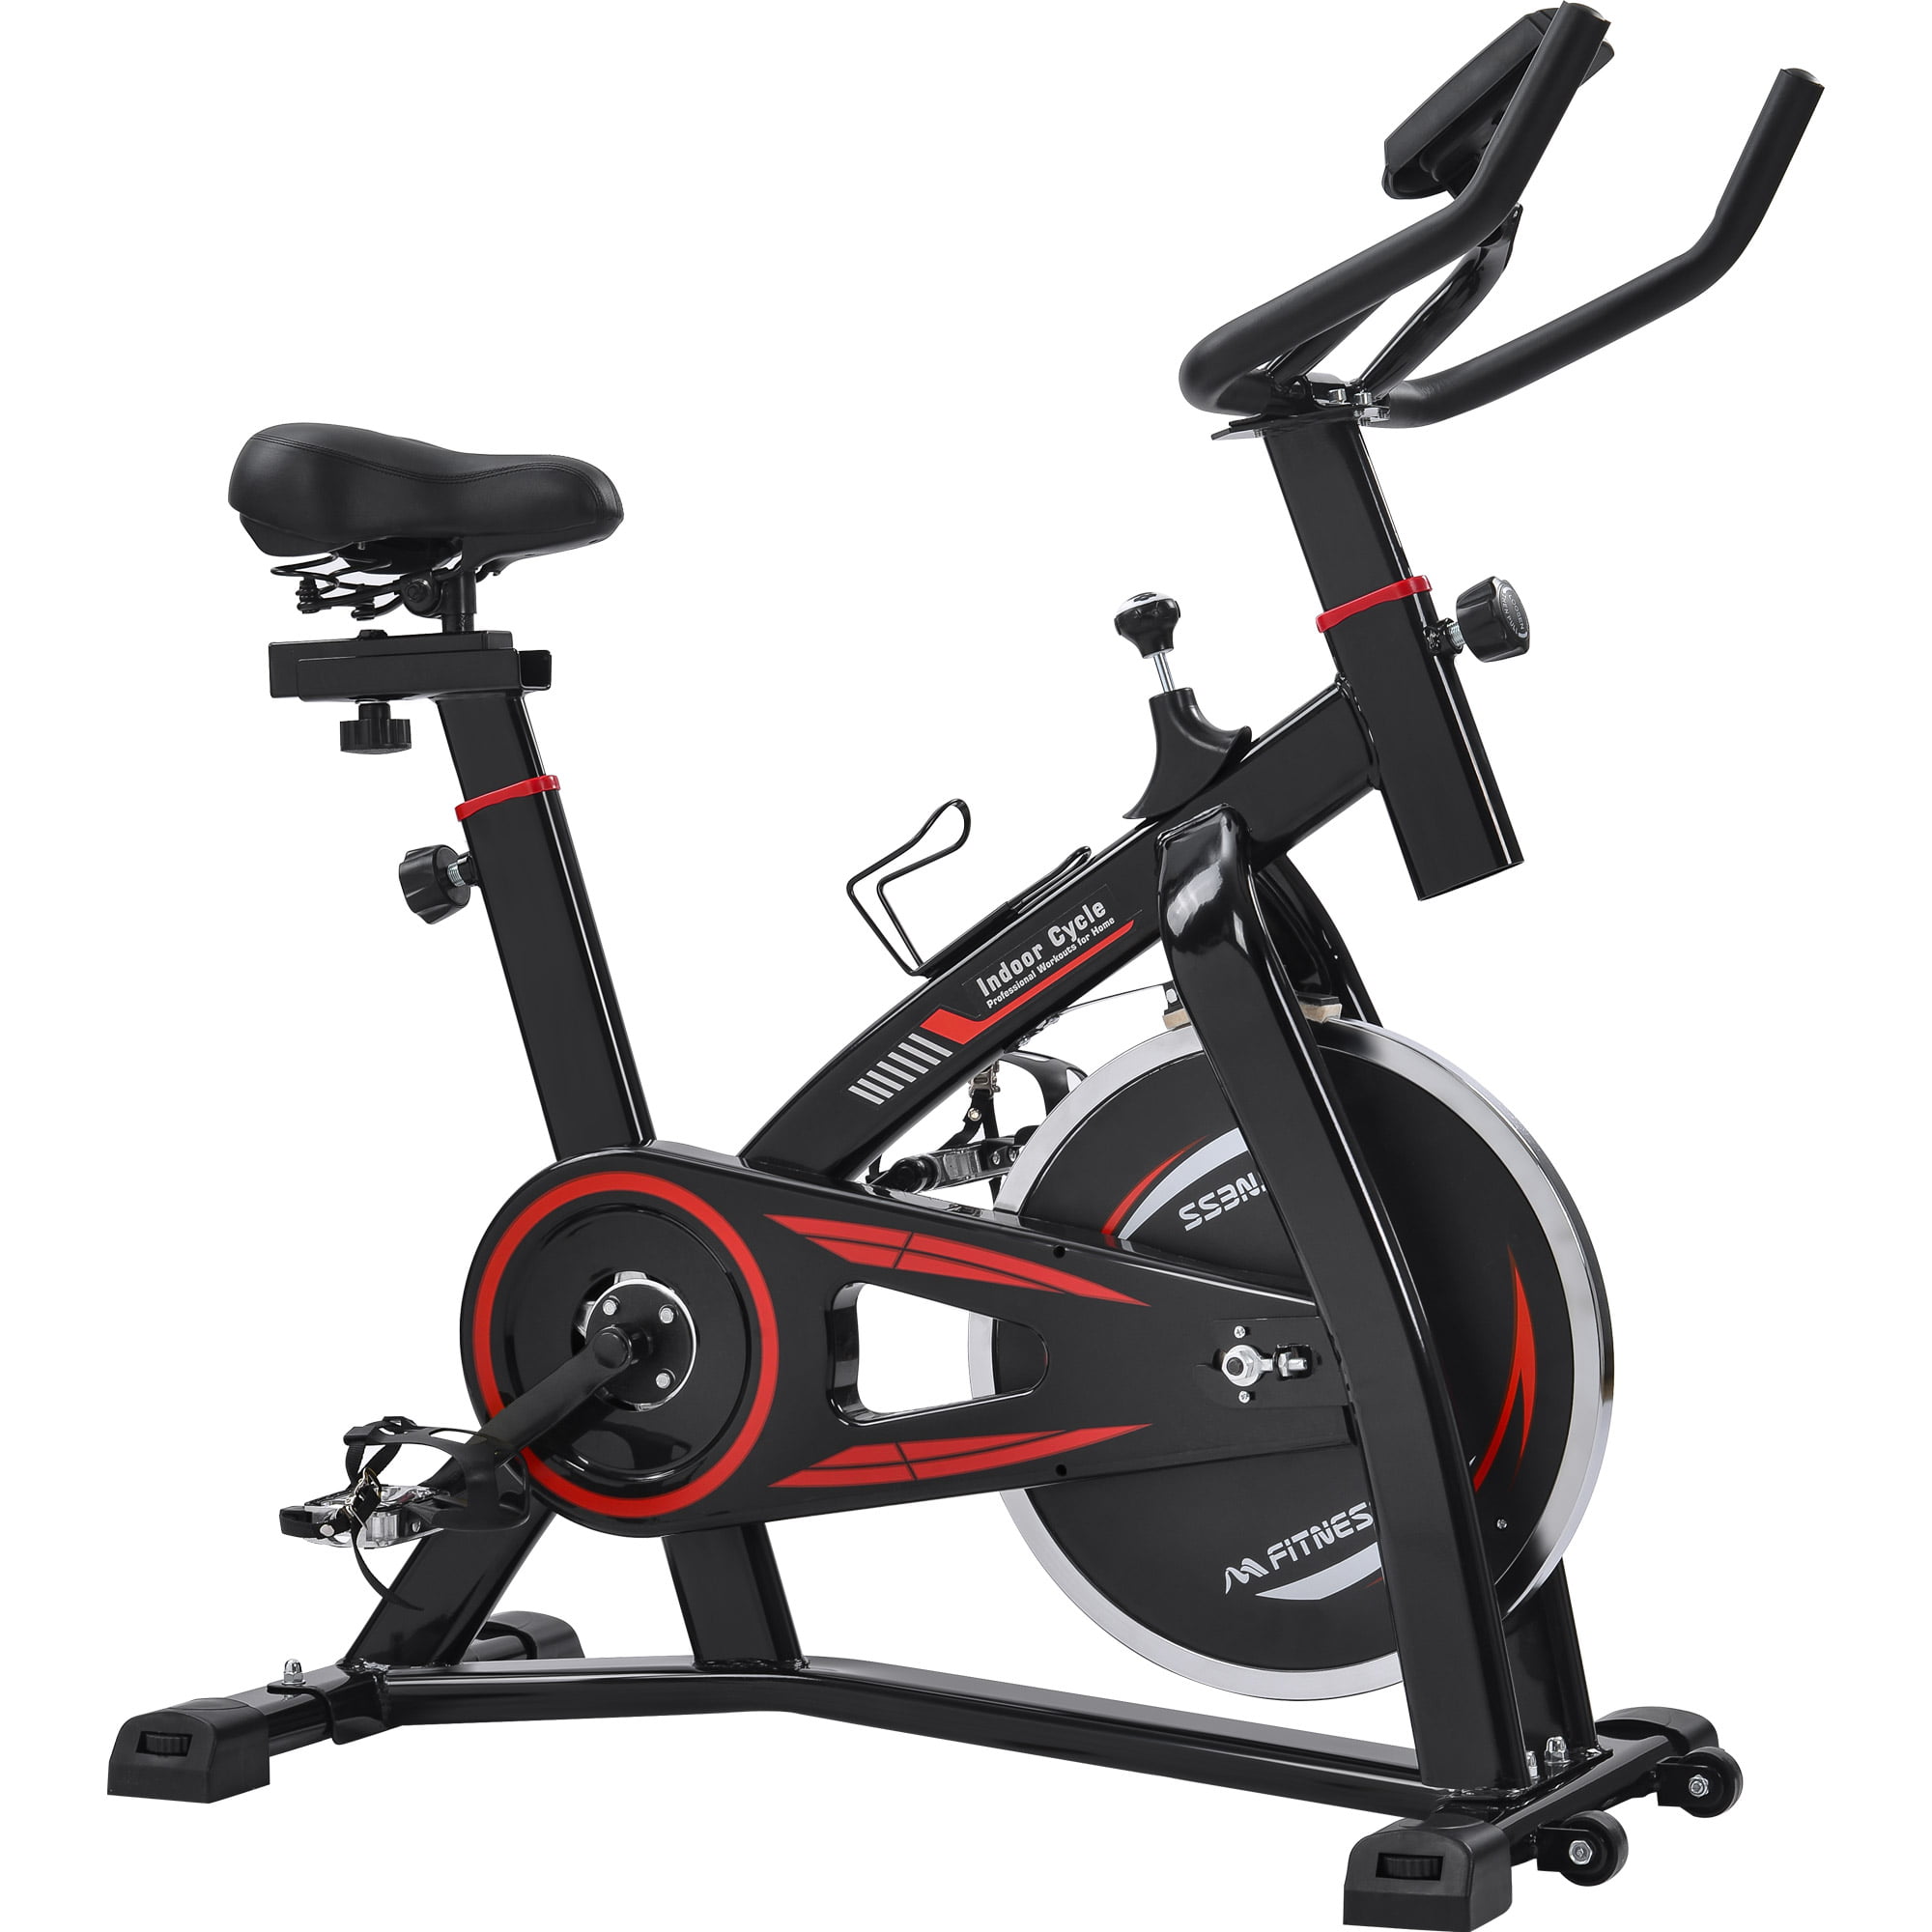 New Pro Bike Exercise Adjustable Indoor Cycle Fitness Workout Machine Flywheel 